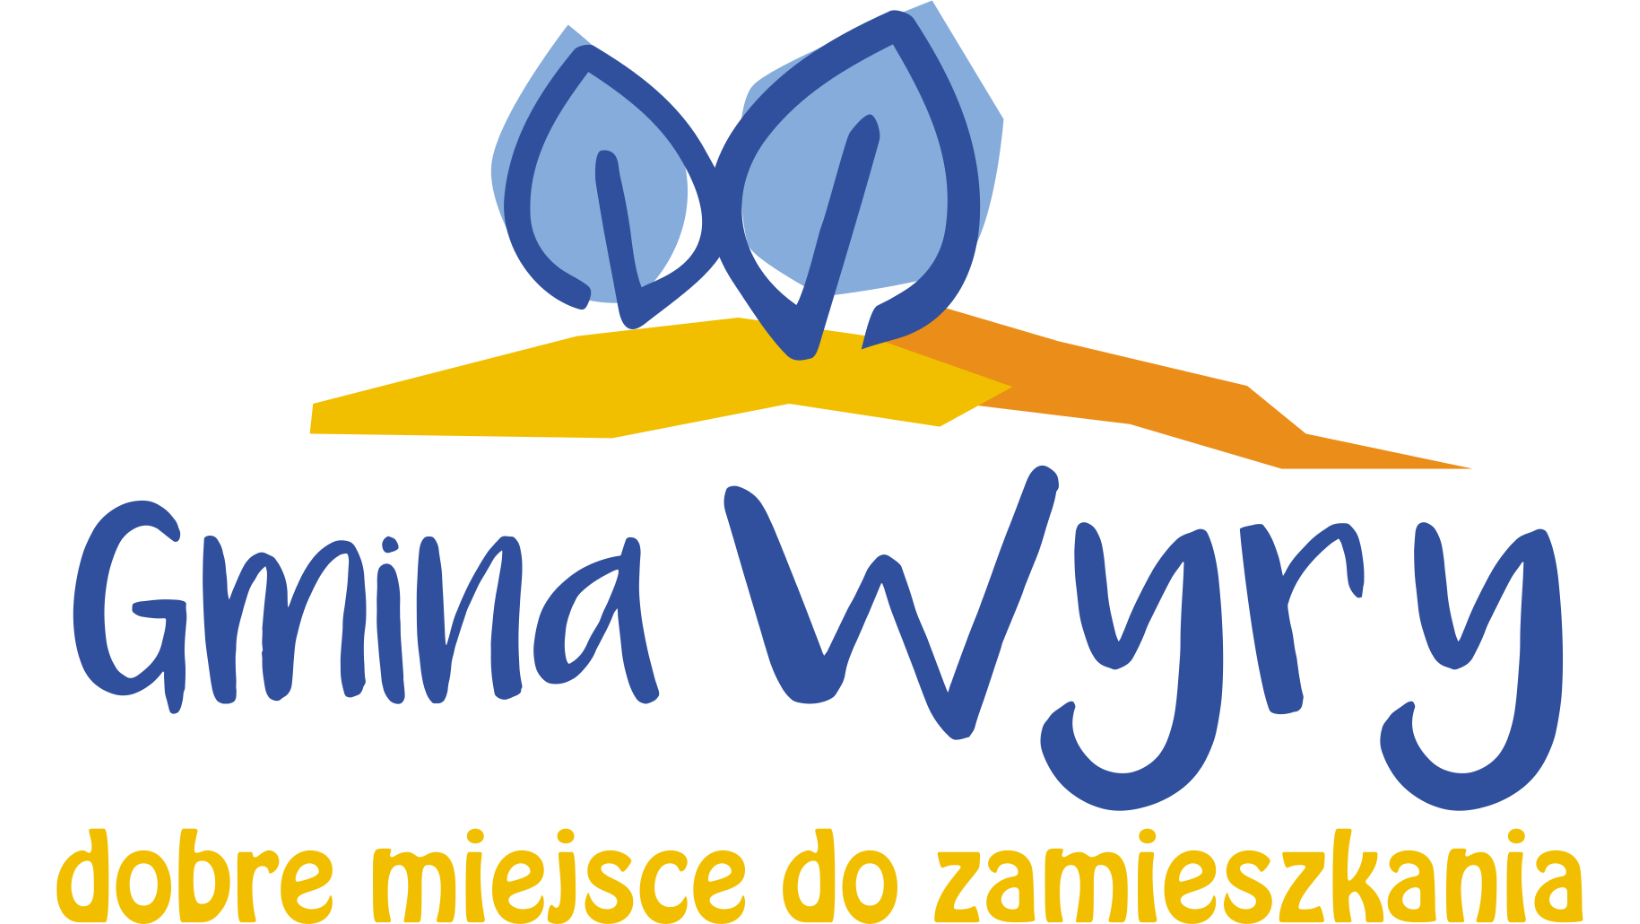 Gmina Wyry - Strona Główna